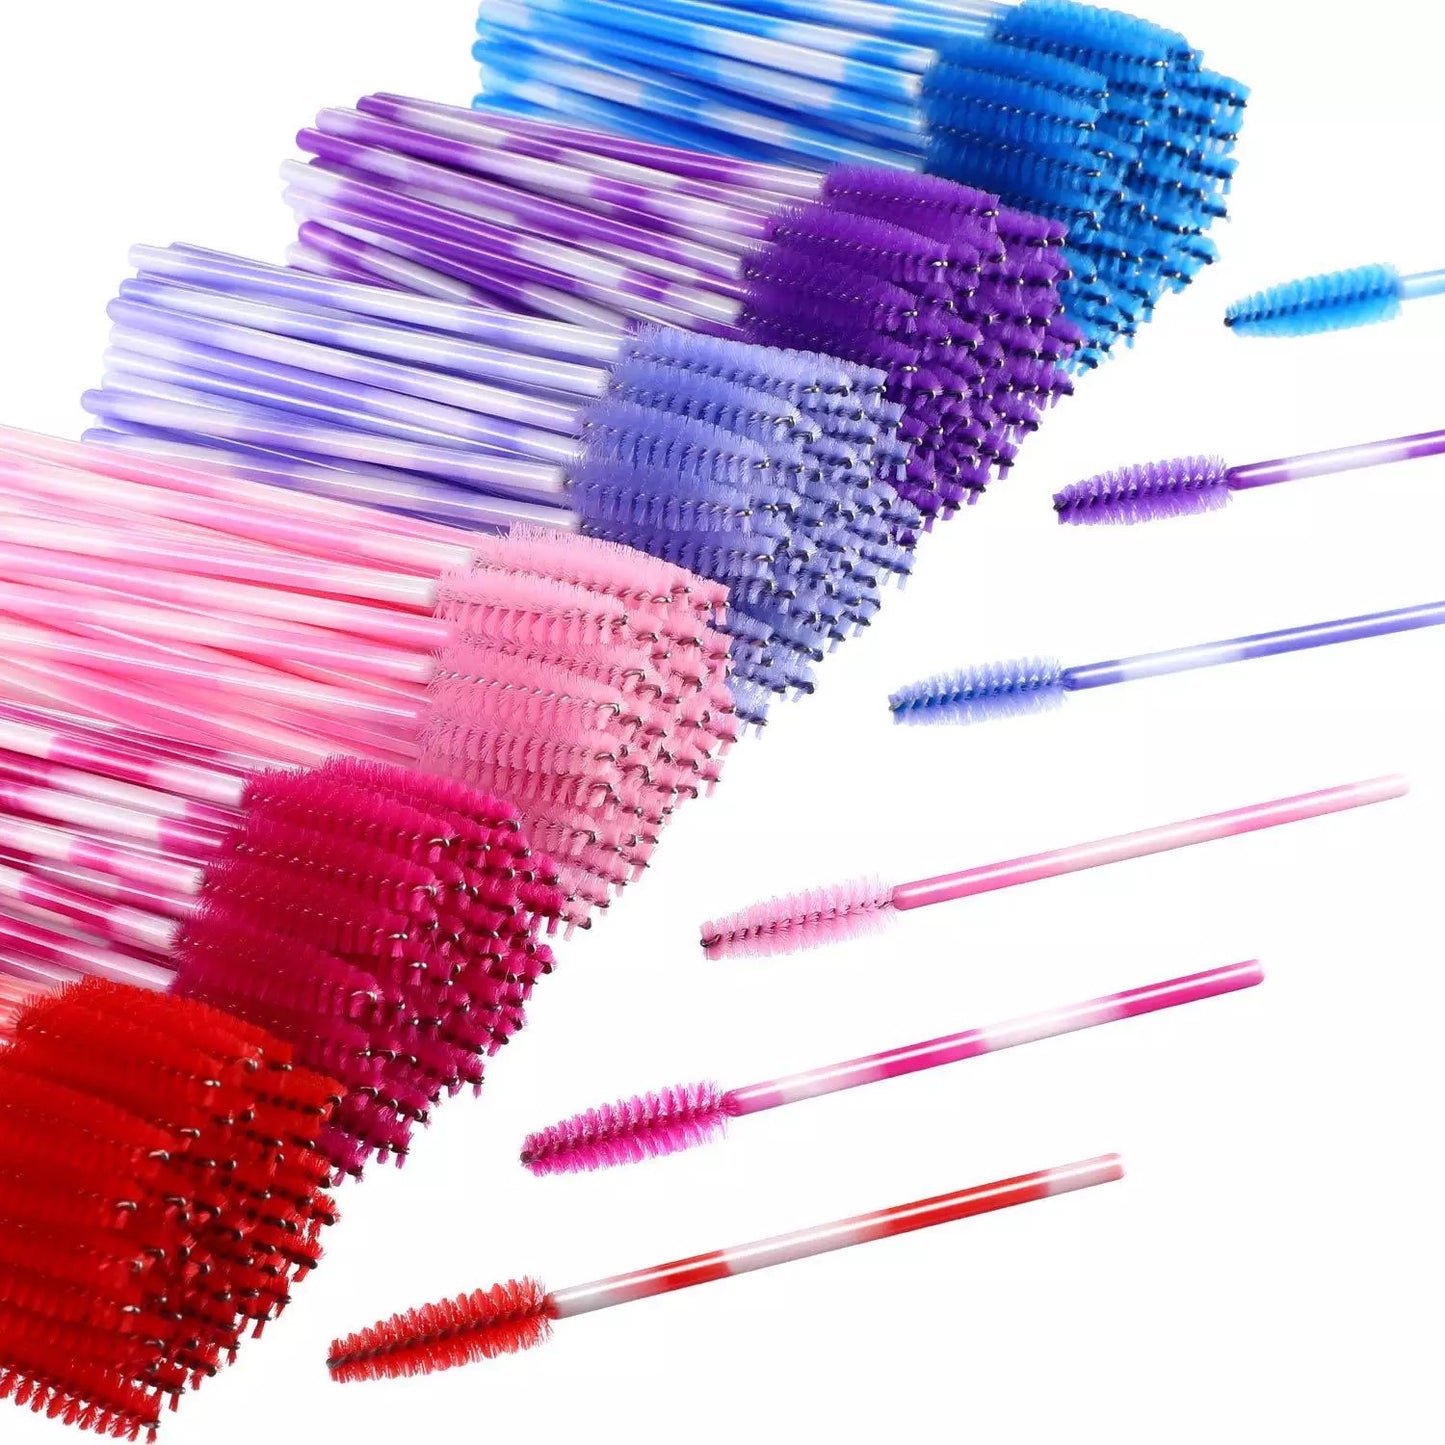 Red Mascara Brush 50pcs - Premier Nail Supply 